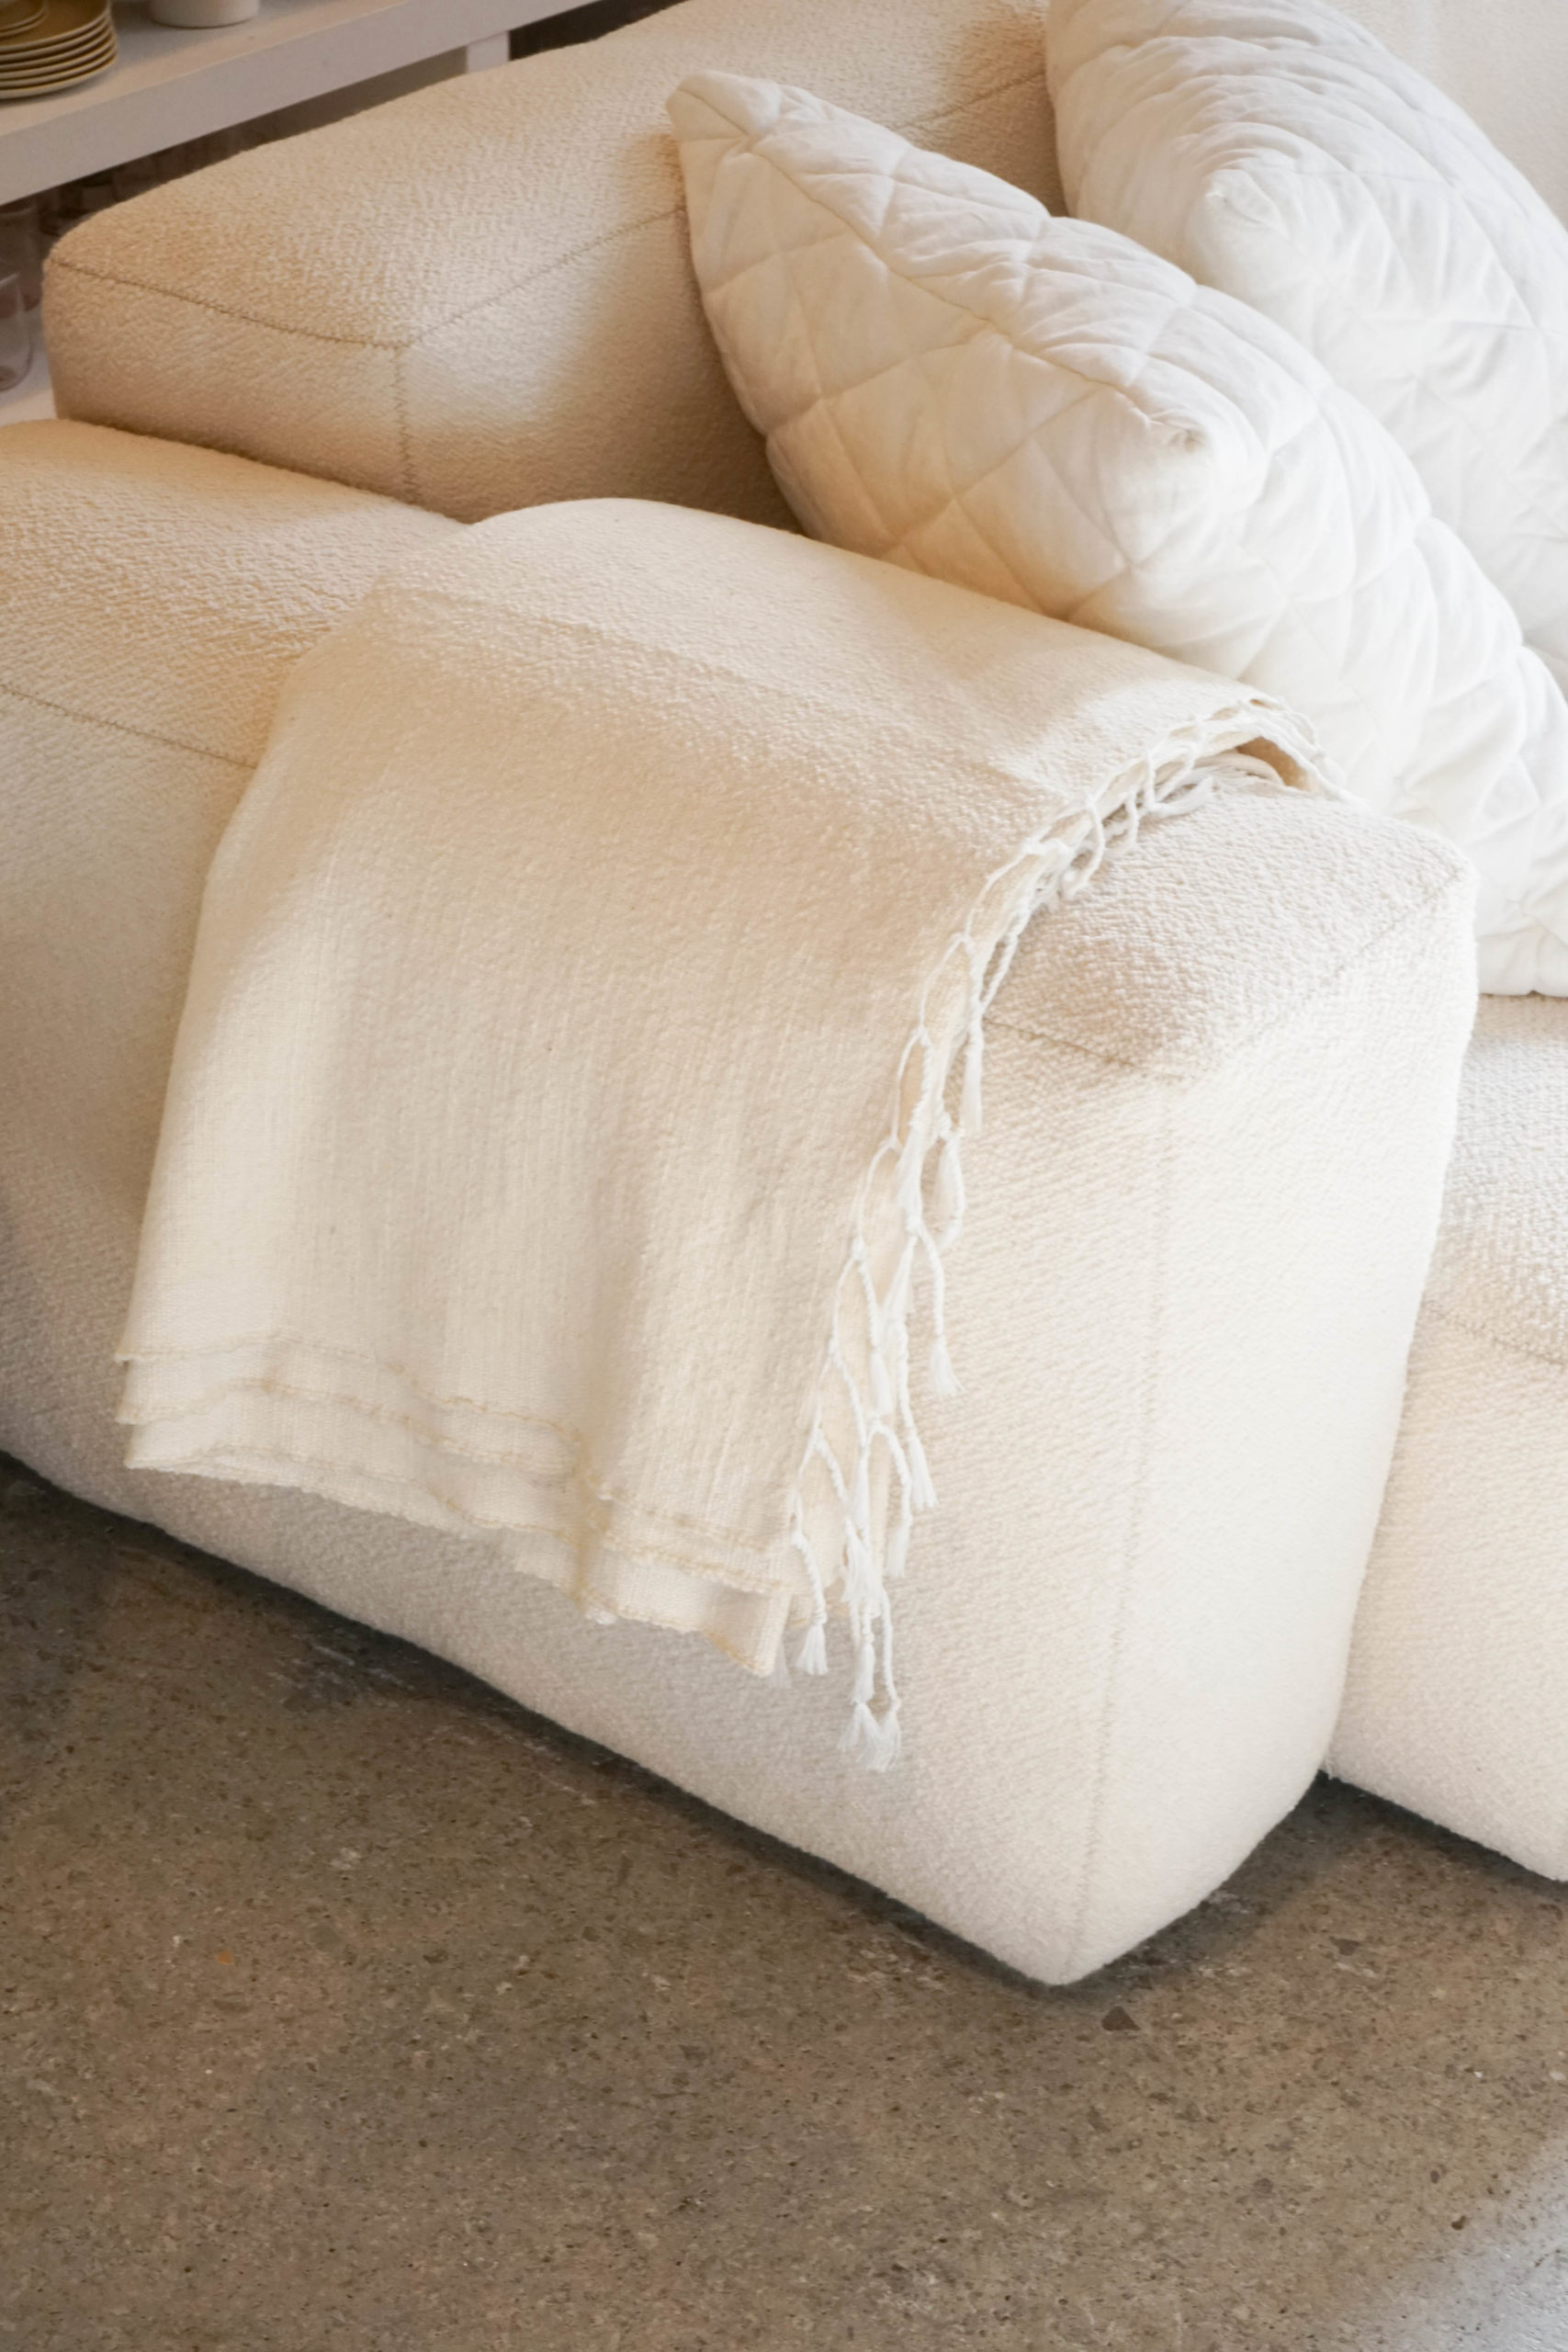 sofa y colcha de diseño hecha a mano